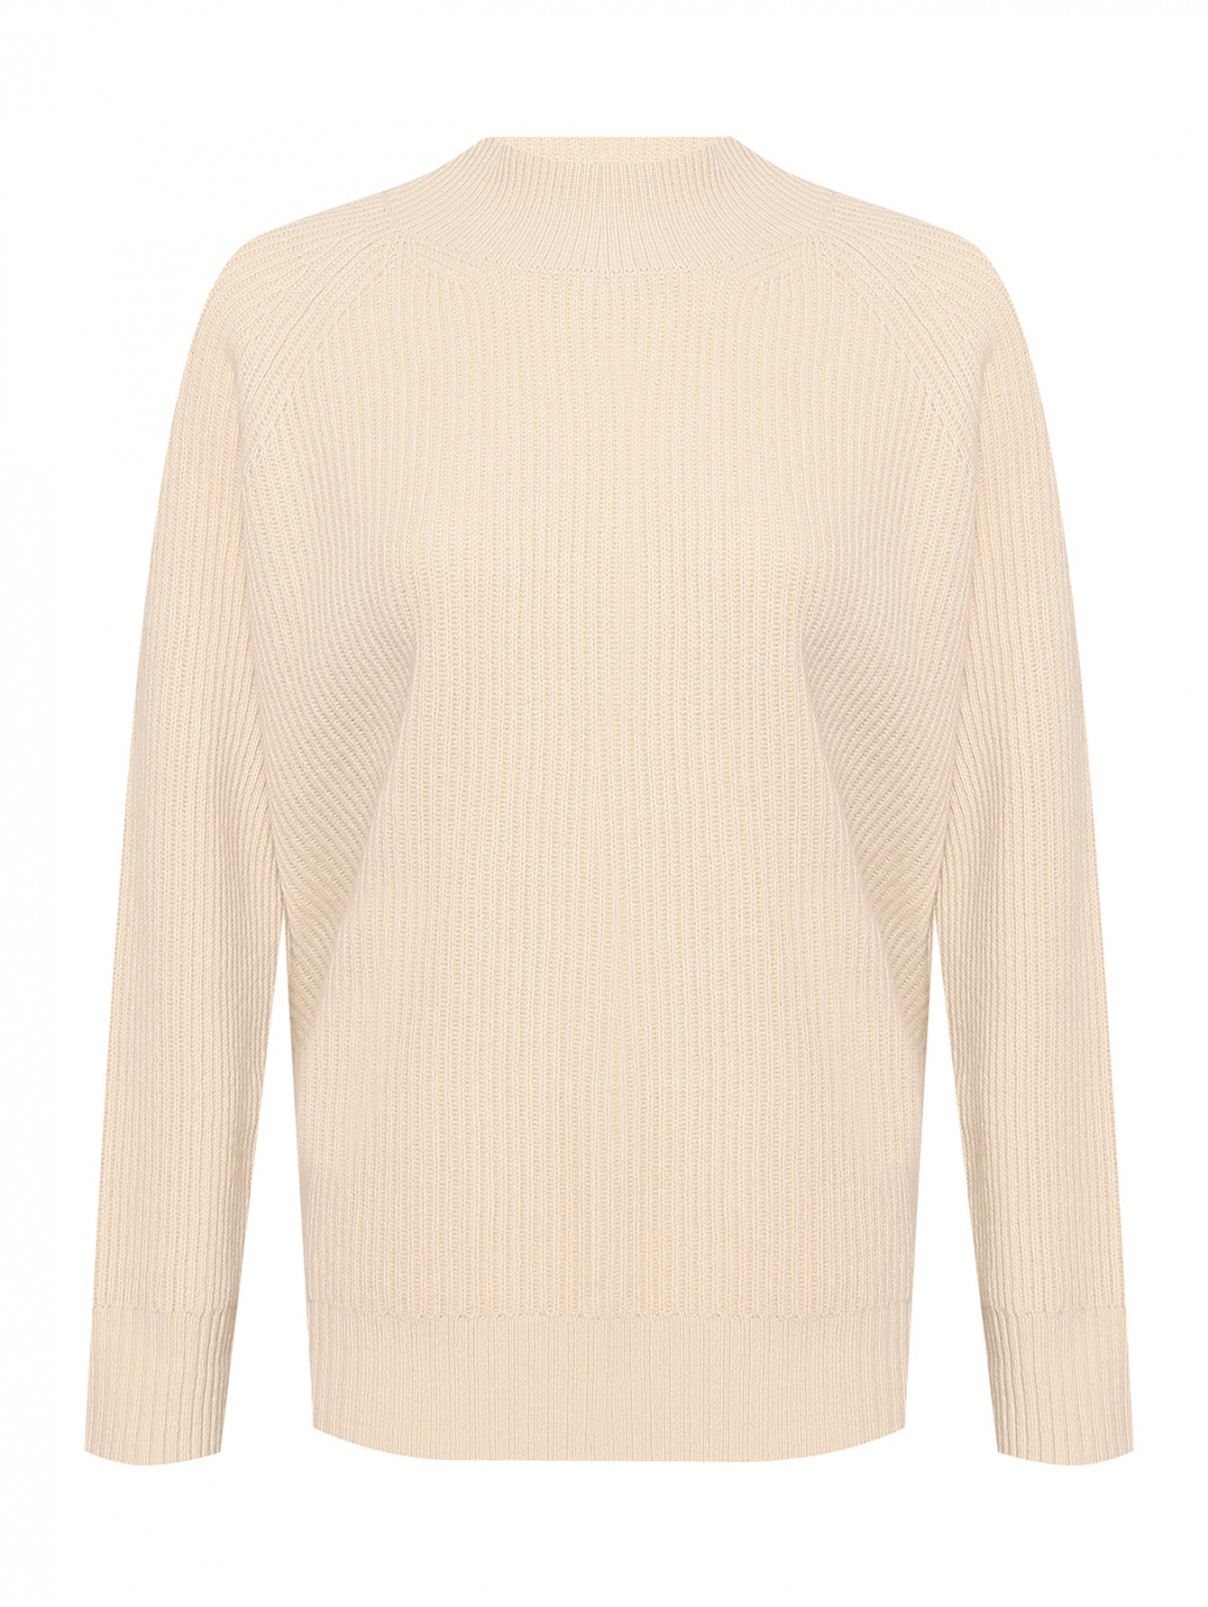 Однотонный свитер из шерсти Weekend Max Mara  –  Общий вид  – Цвет:  Бежевый